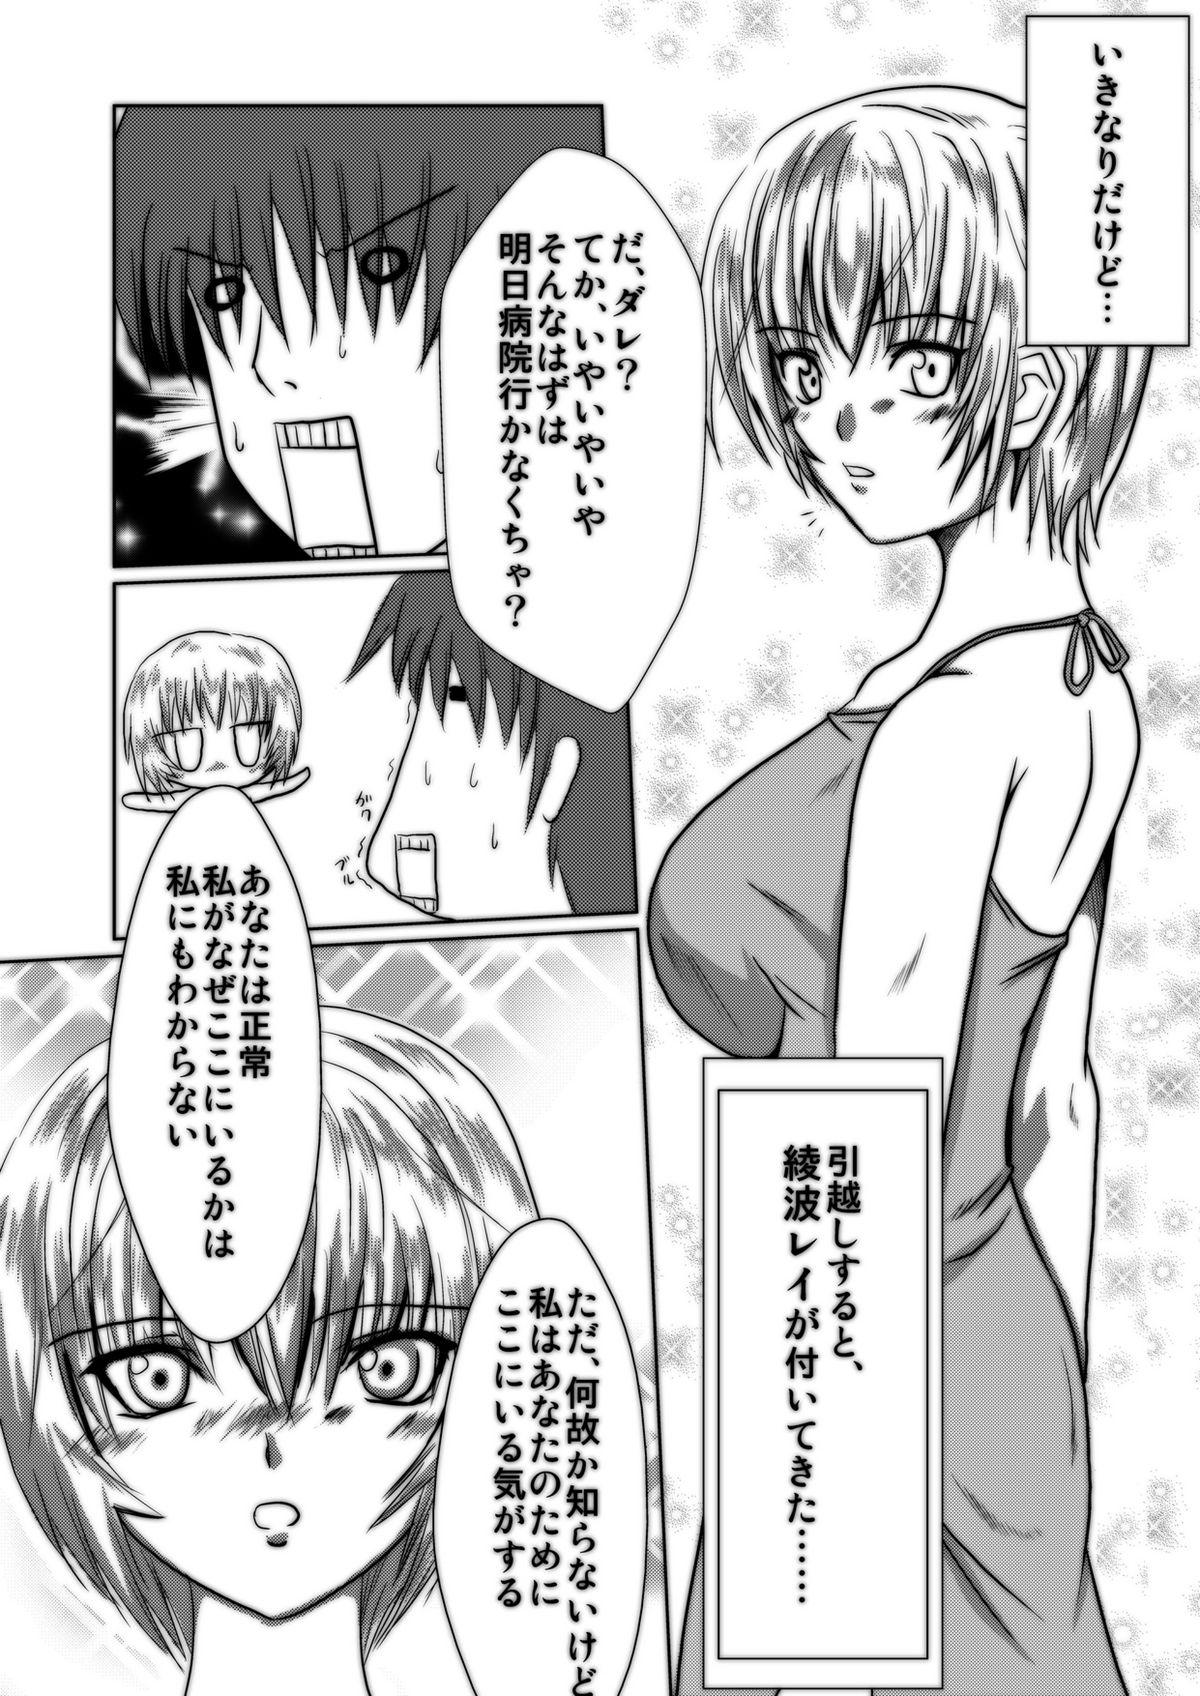 Venezolana Bakunyuna Ayanami-san to no sei katsu! | Sexual activity with Rei's breasts! - Neon genesis evangelion Scissoring - Page 2